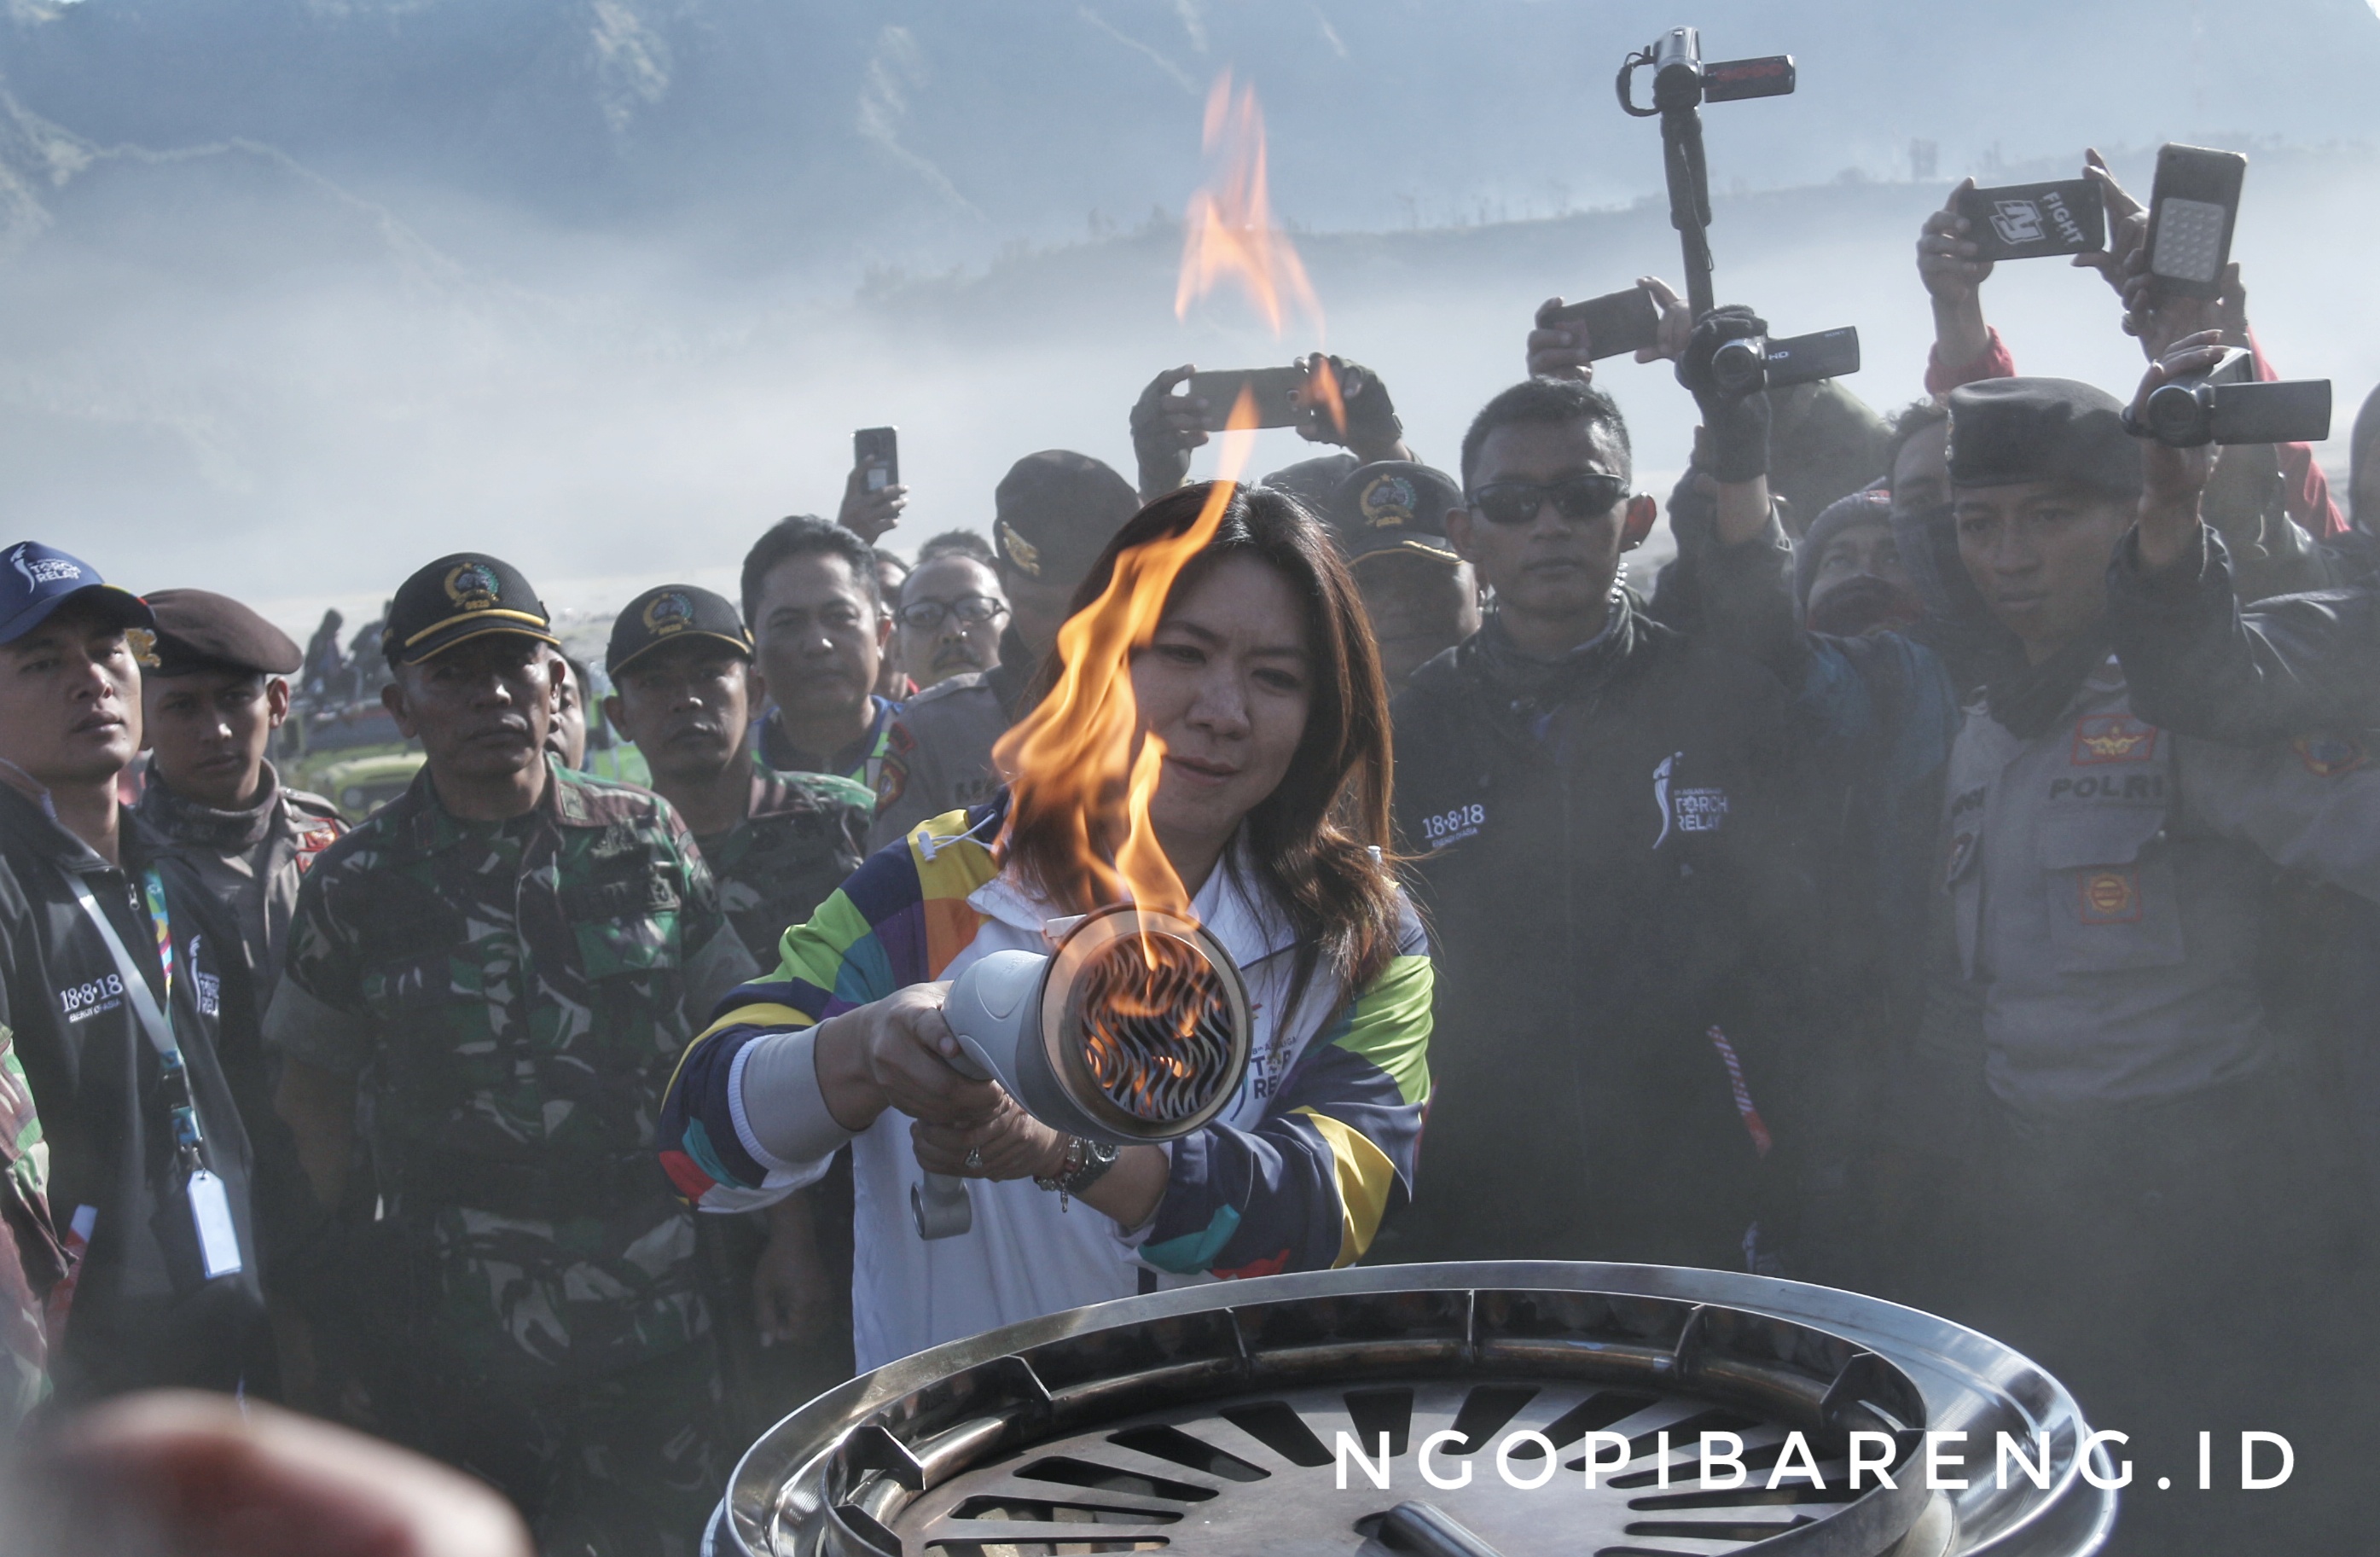 Mantan pemain bulu tangkis Indonesi, Lucia Francisca Susi Susanti saat menyalakan api Asian Games di Bromo, Sabtu 21 Juli 2018. (Foto: Haris/ngopibareng)